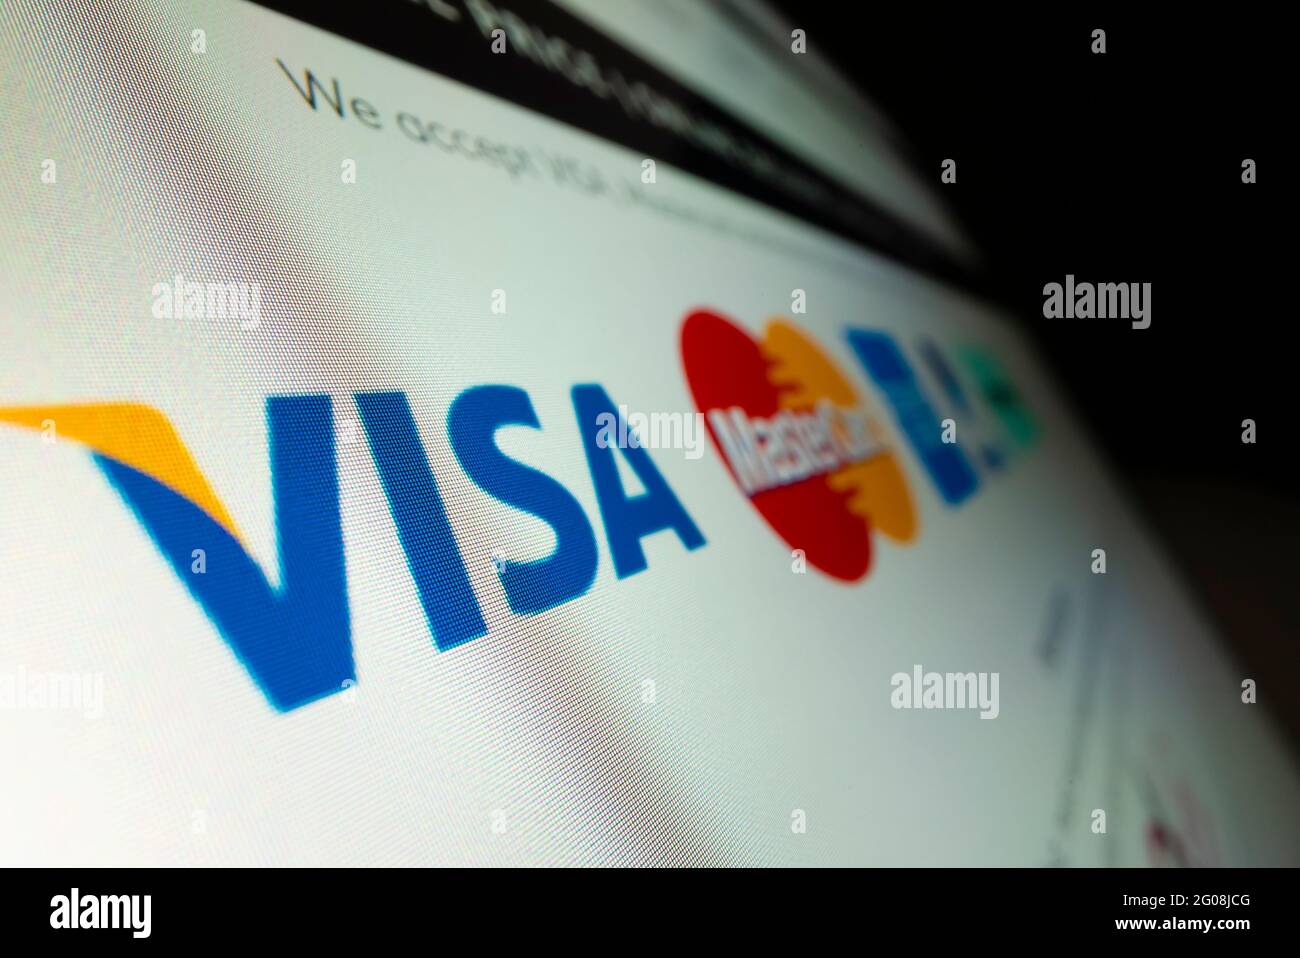 Vista ravvicinata del logo Visa sul sito Web dello shopping online Foto Stock